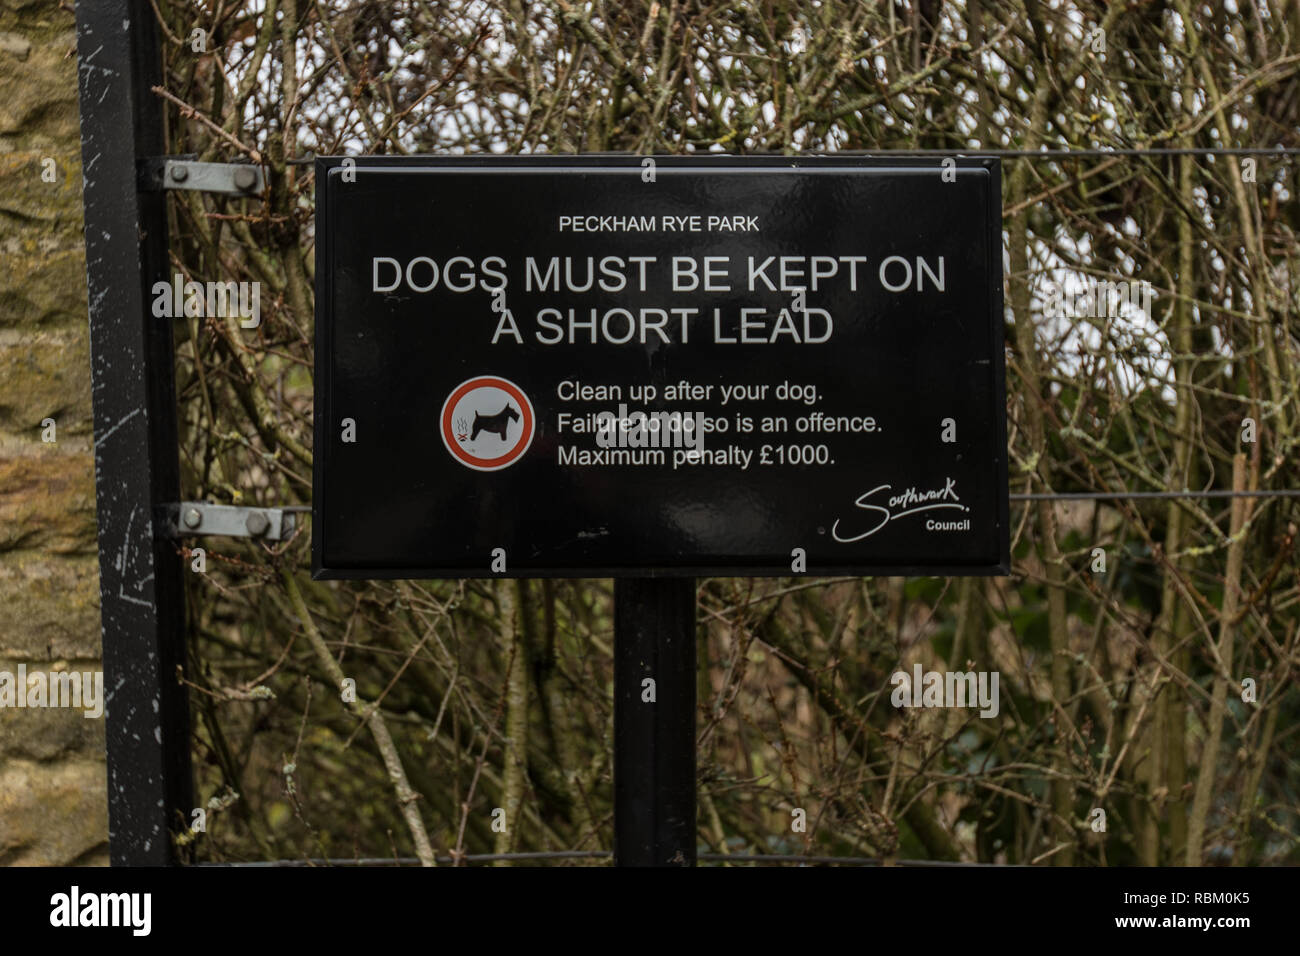 Peckham Rye Park, Londres, Reino Unido. 11 ene, 2019. ' Los perros deben mantenerse en un cable corto' de letreros de advertencia en la entrada a los jardines Sexby dentro del espacio compartido de Peckham Rye Park. Crédito: David Rowe/Alamy Live News Foto de stock